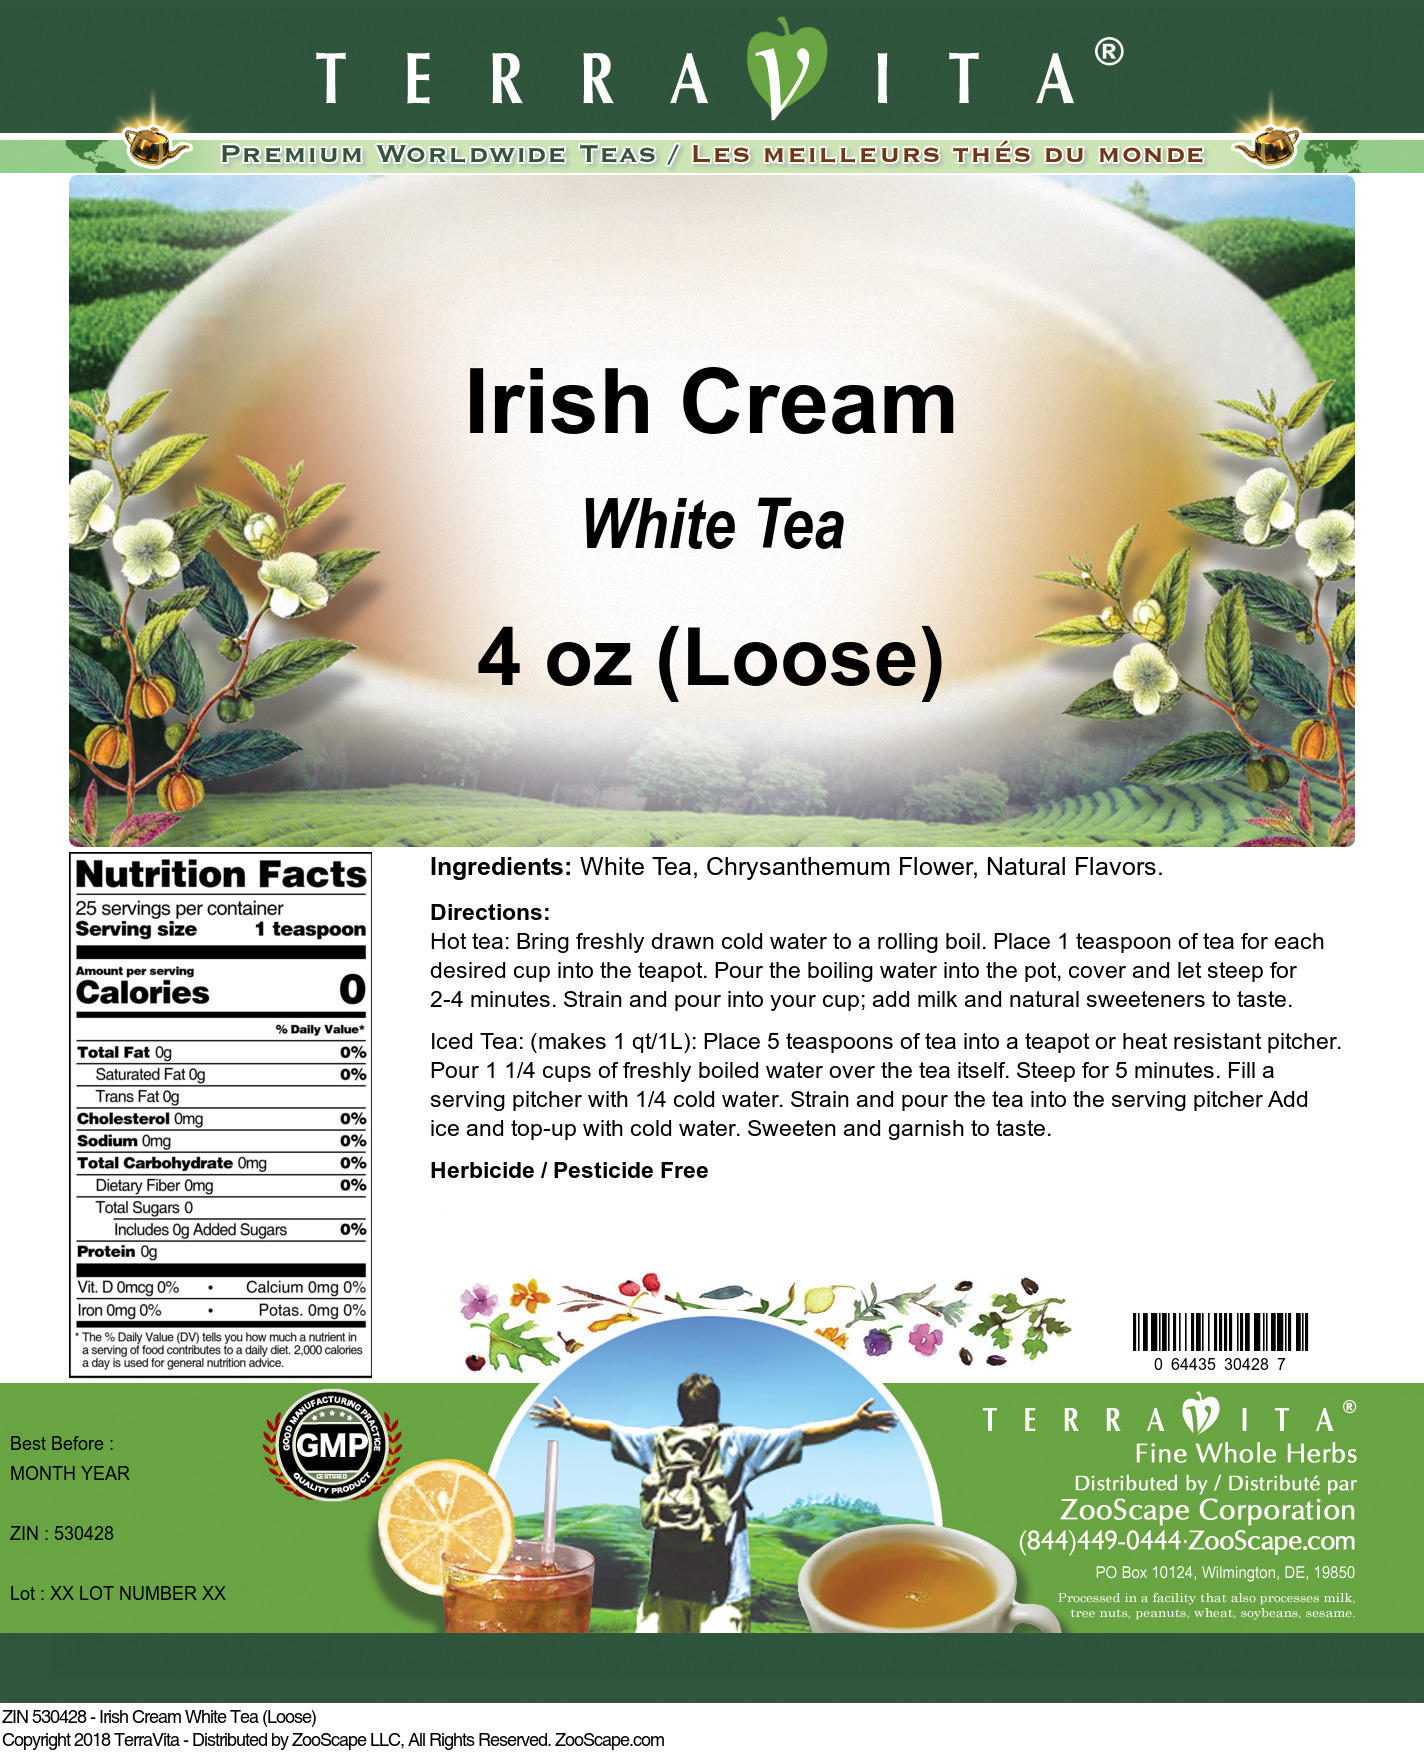 Irish Cream White Tea (Loose) - Label